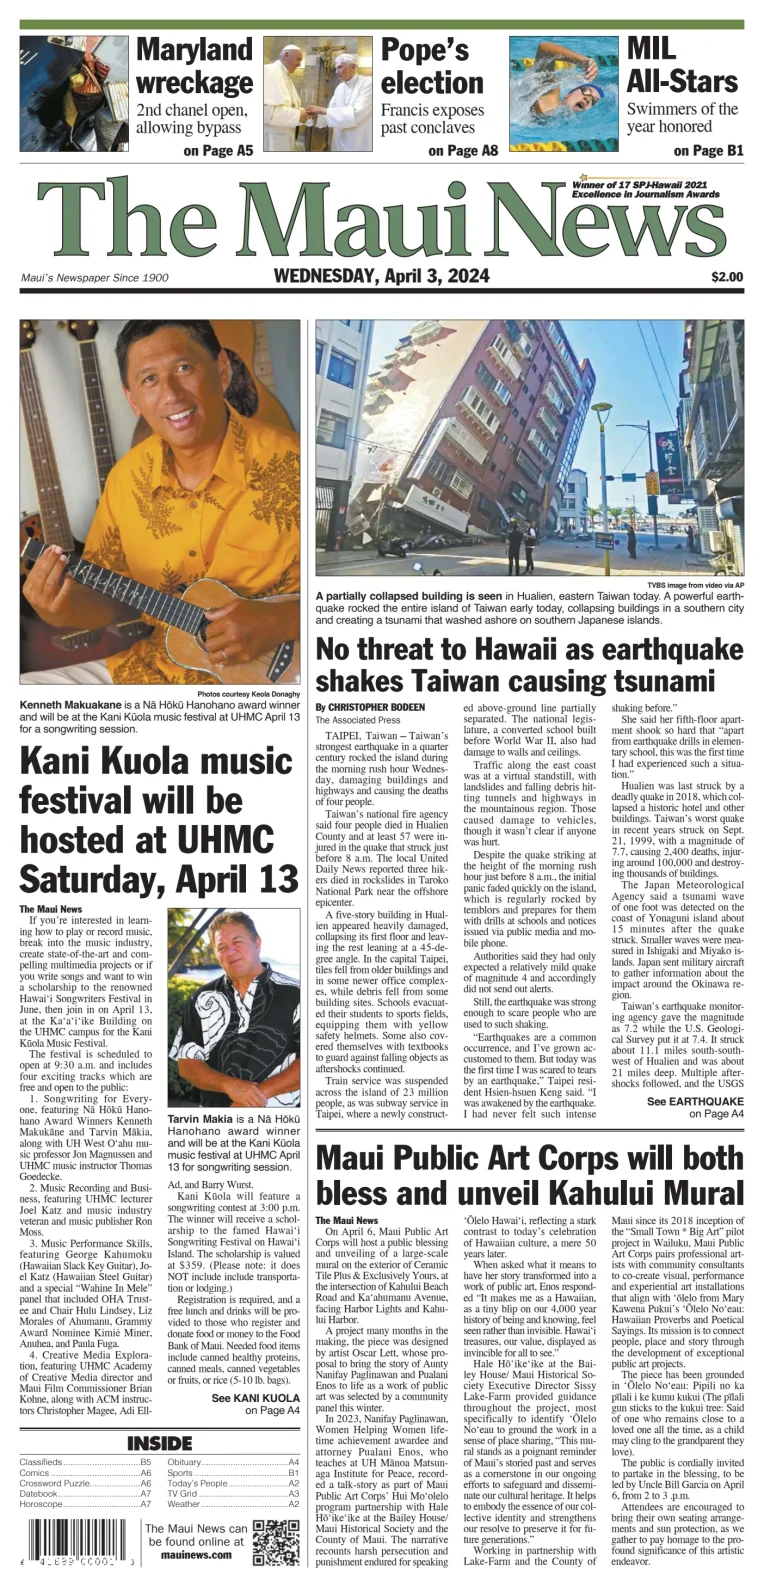 The Maui News